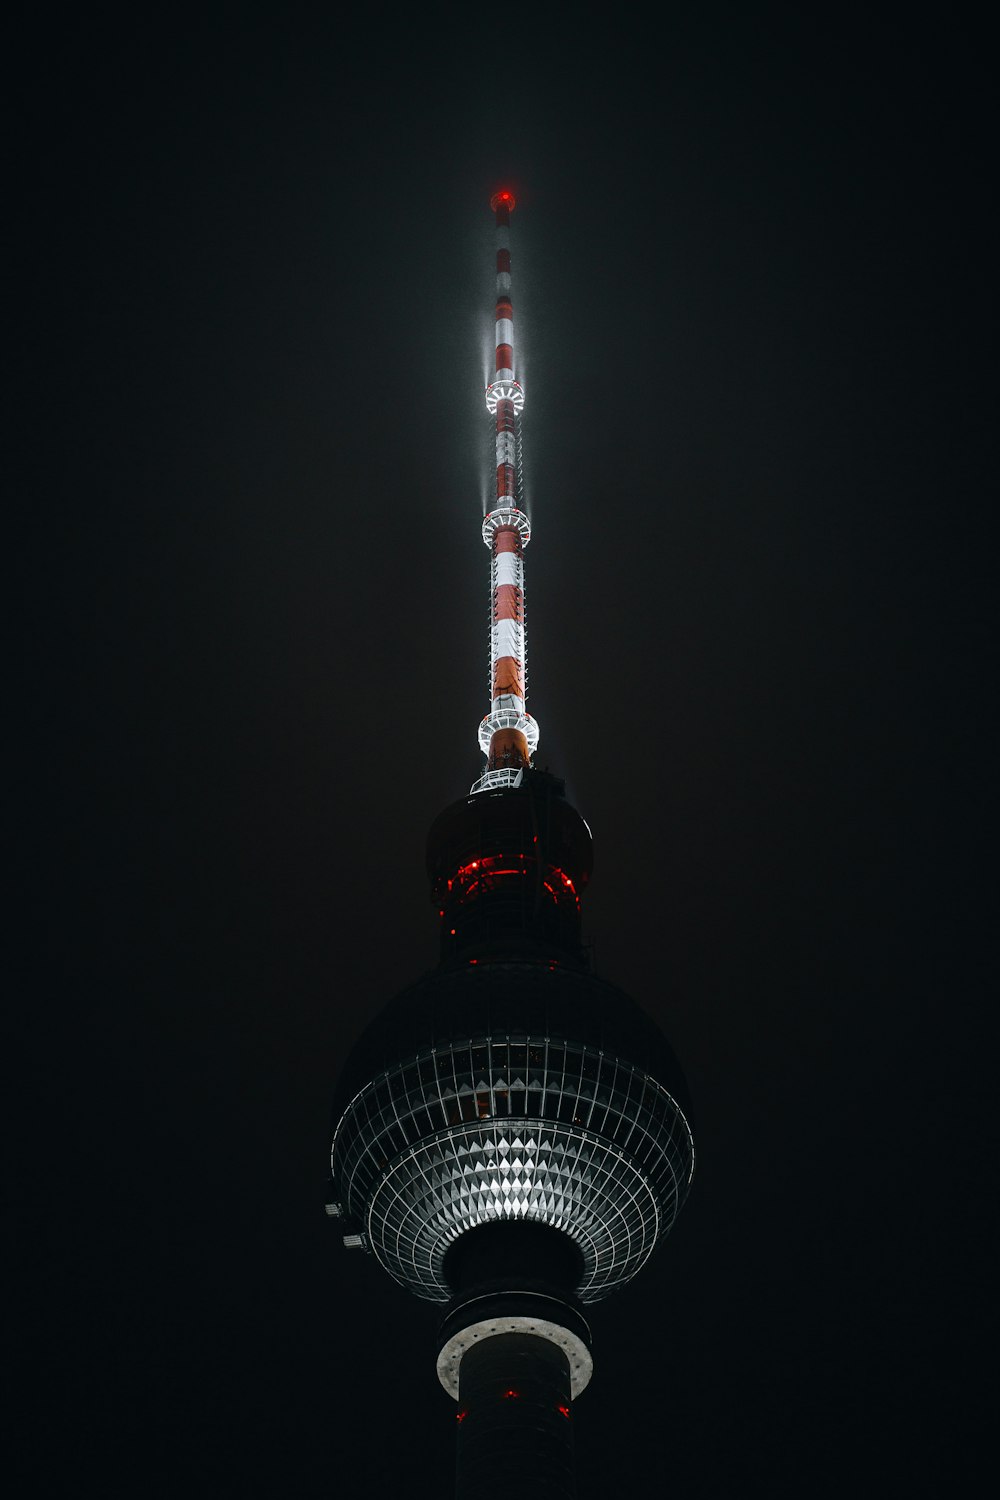 Ein hoher Turm mit rotem Licht